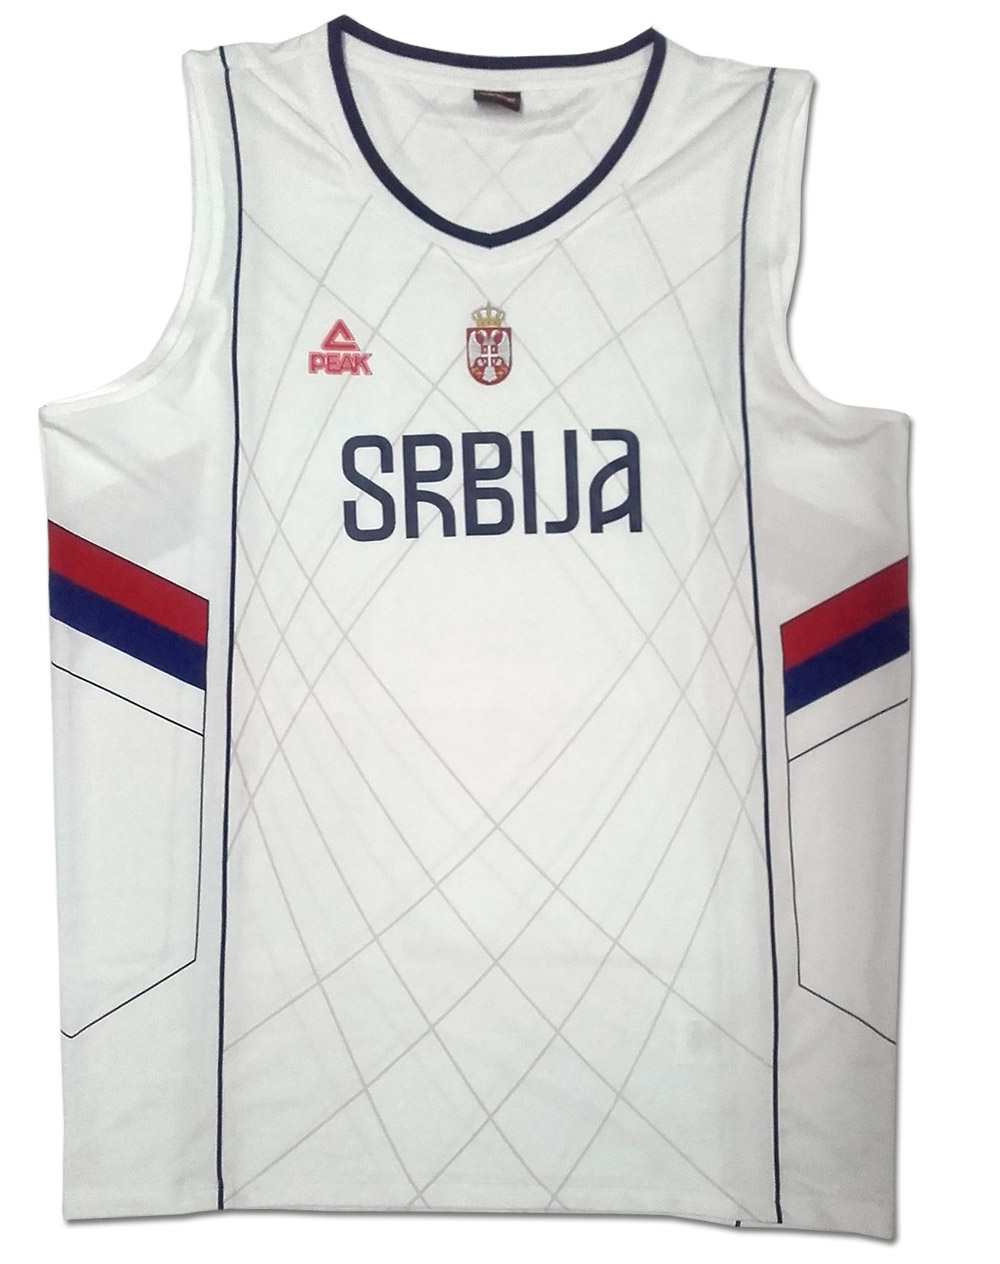 Peak ženski dres košarkaške reprezentacije Srbije sa štampom - beli 